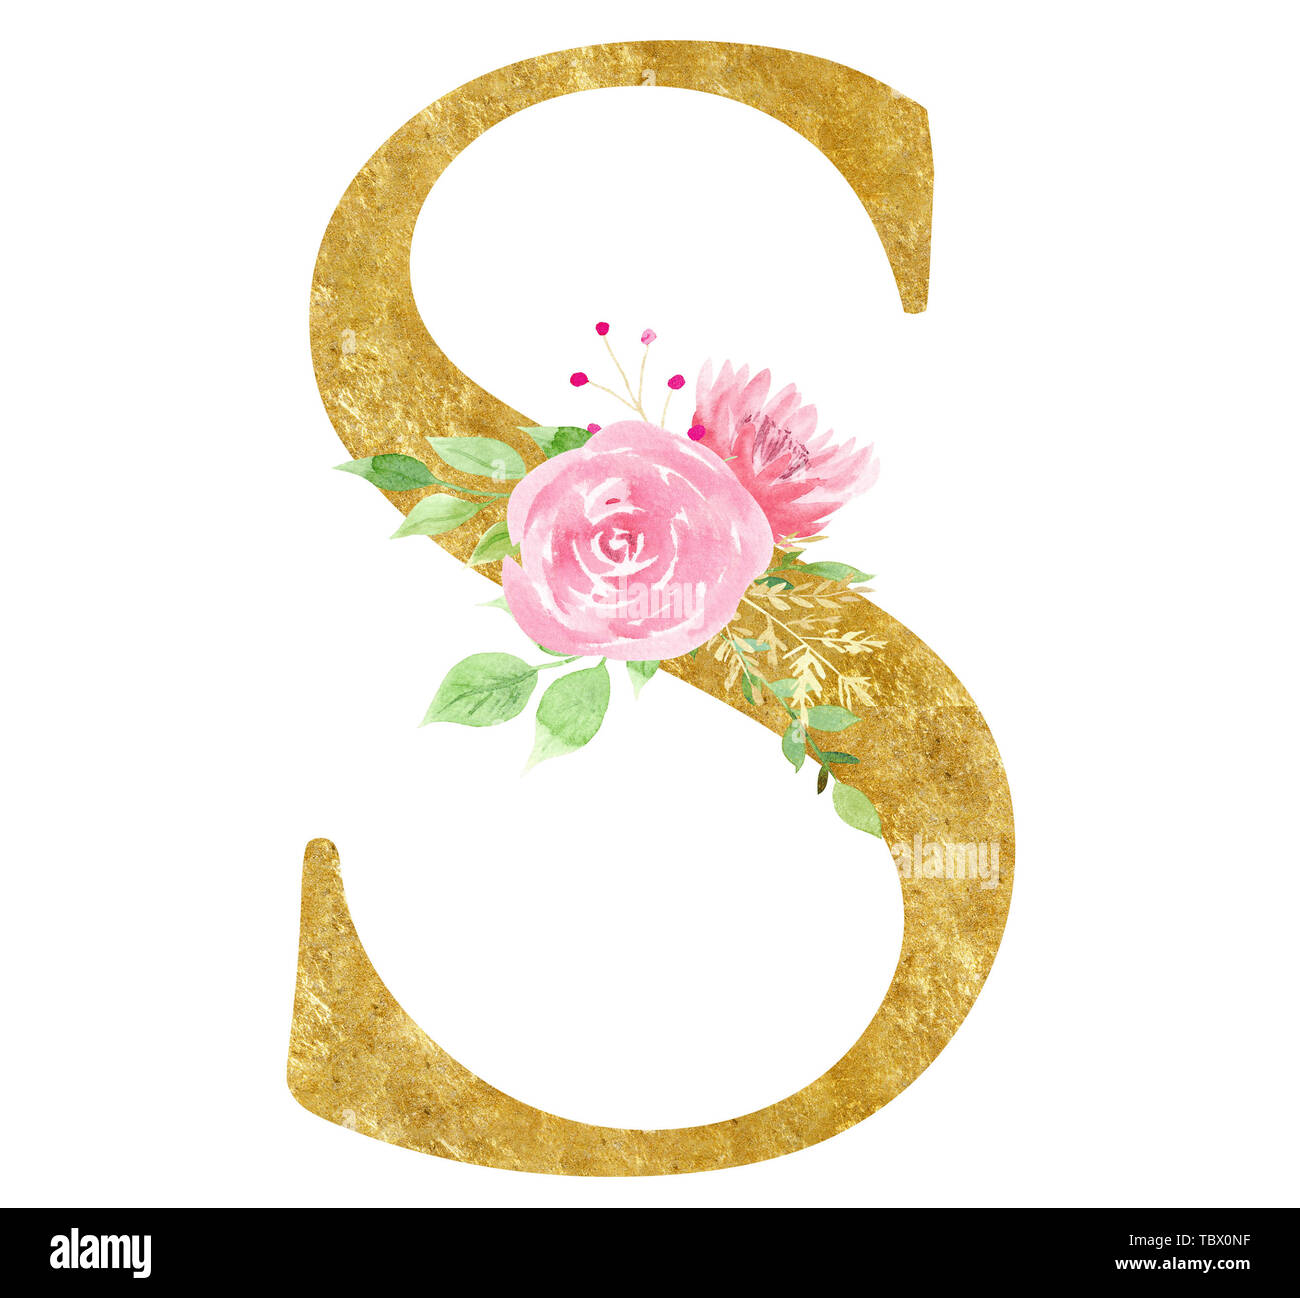 Erste S Symbol mit Blossom raster Abbildung. Kreative Buchstaben mit blühenden Blumen Aquarell Malerei. Botanische Konsonanten mit goldenen Stockfoto